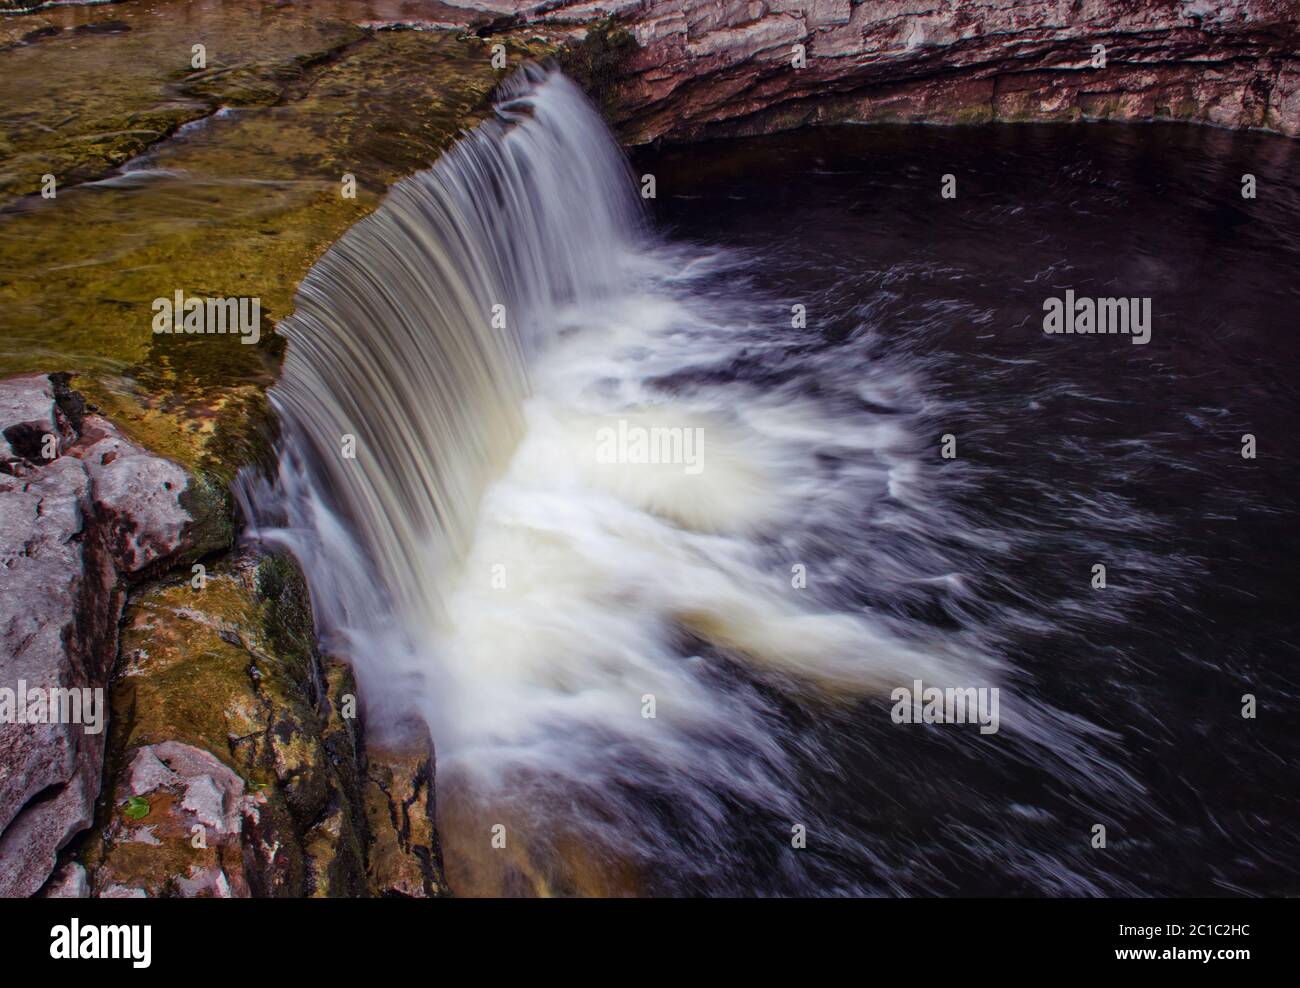 Guardando giù alla fascia inferiore delle cascate Stainforth Force nello Yorkshire Dales, Regno Unito Foto Stock